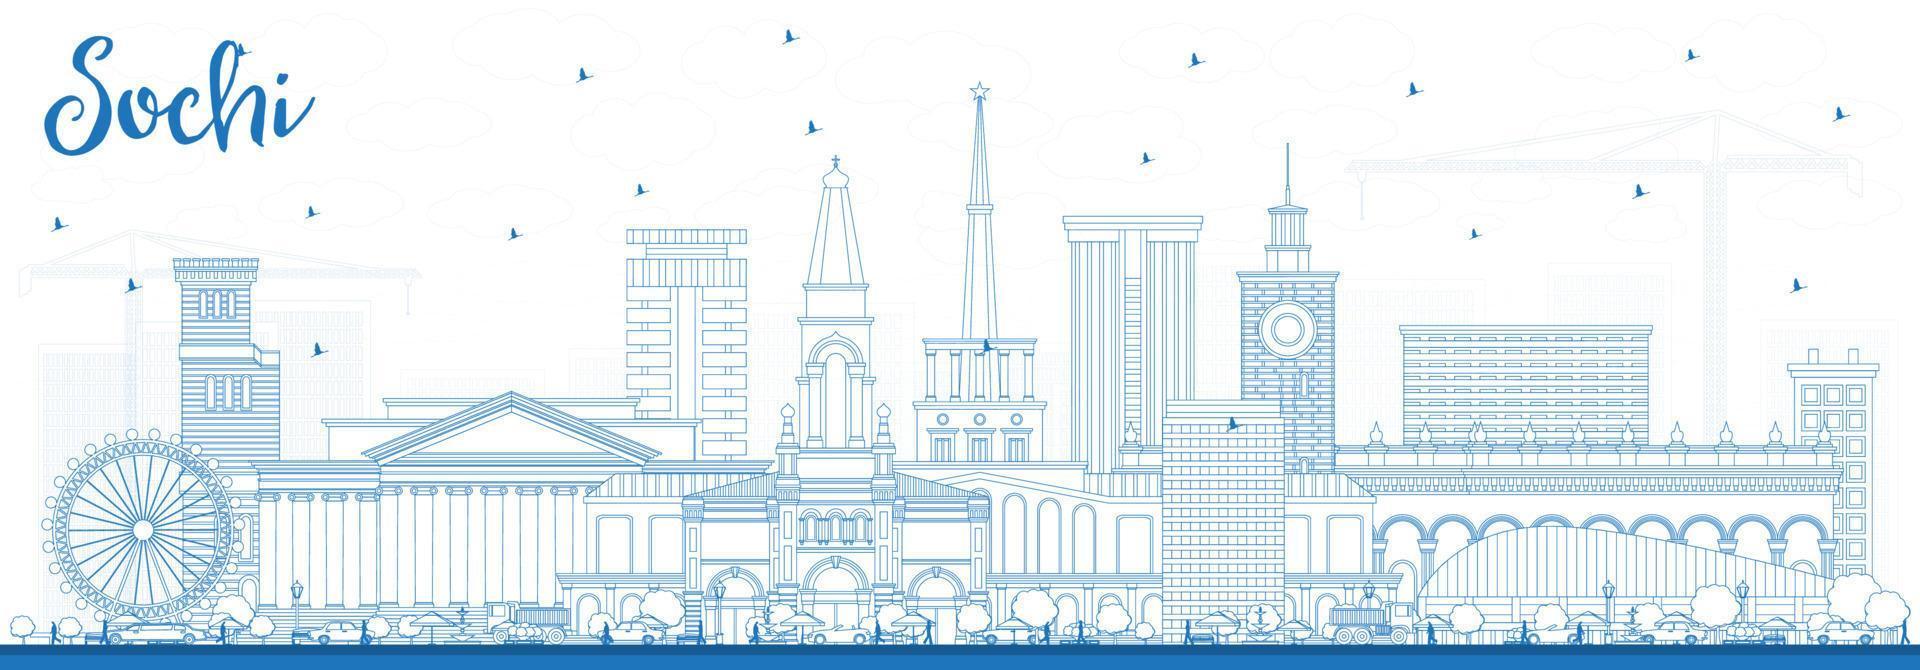 delinear el horizonte de la ciudad de sochi rusia con edificios azules. vector